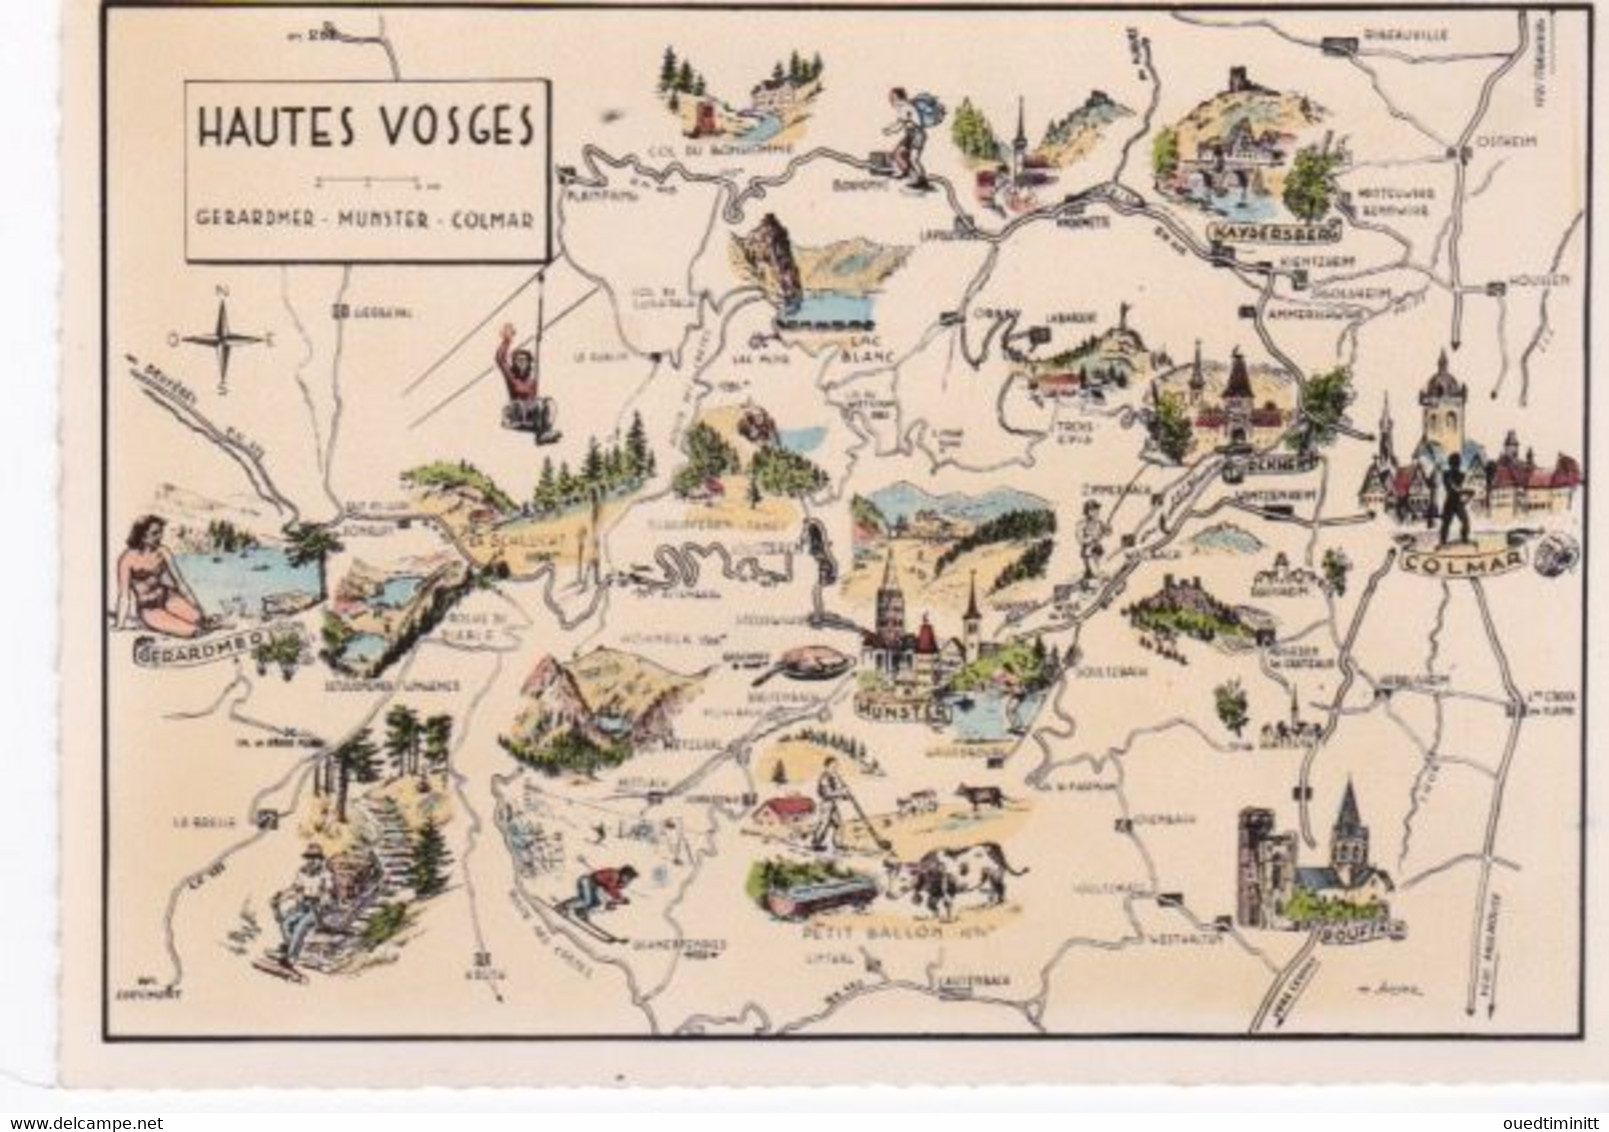 Carte Géographique Des Hautes Vosges, Gerardmer, Munster, Colmar, Cpsm Dentelée - Maps